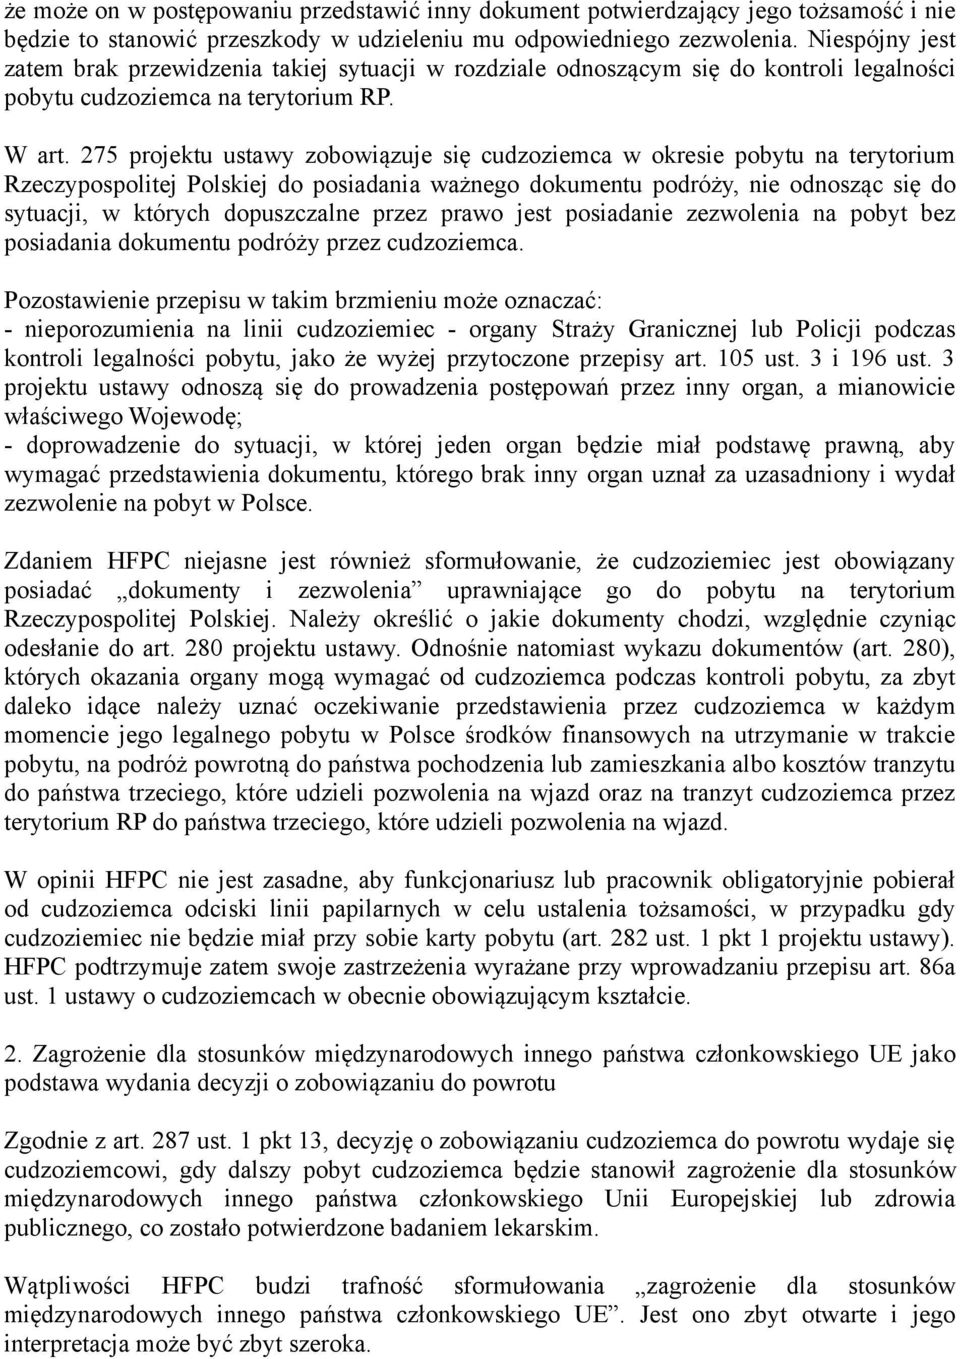 275 projektu ustawy zobowiązuje się cudzoziemca w okresie pobytu na terytorium Rzeczypospolitej Polskiej do posiadania ważnego dokumentu podróży, nie odnosząc się do sytuacji, w których dopuszczalne